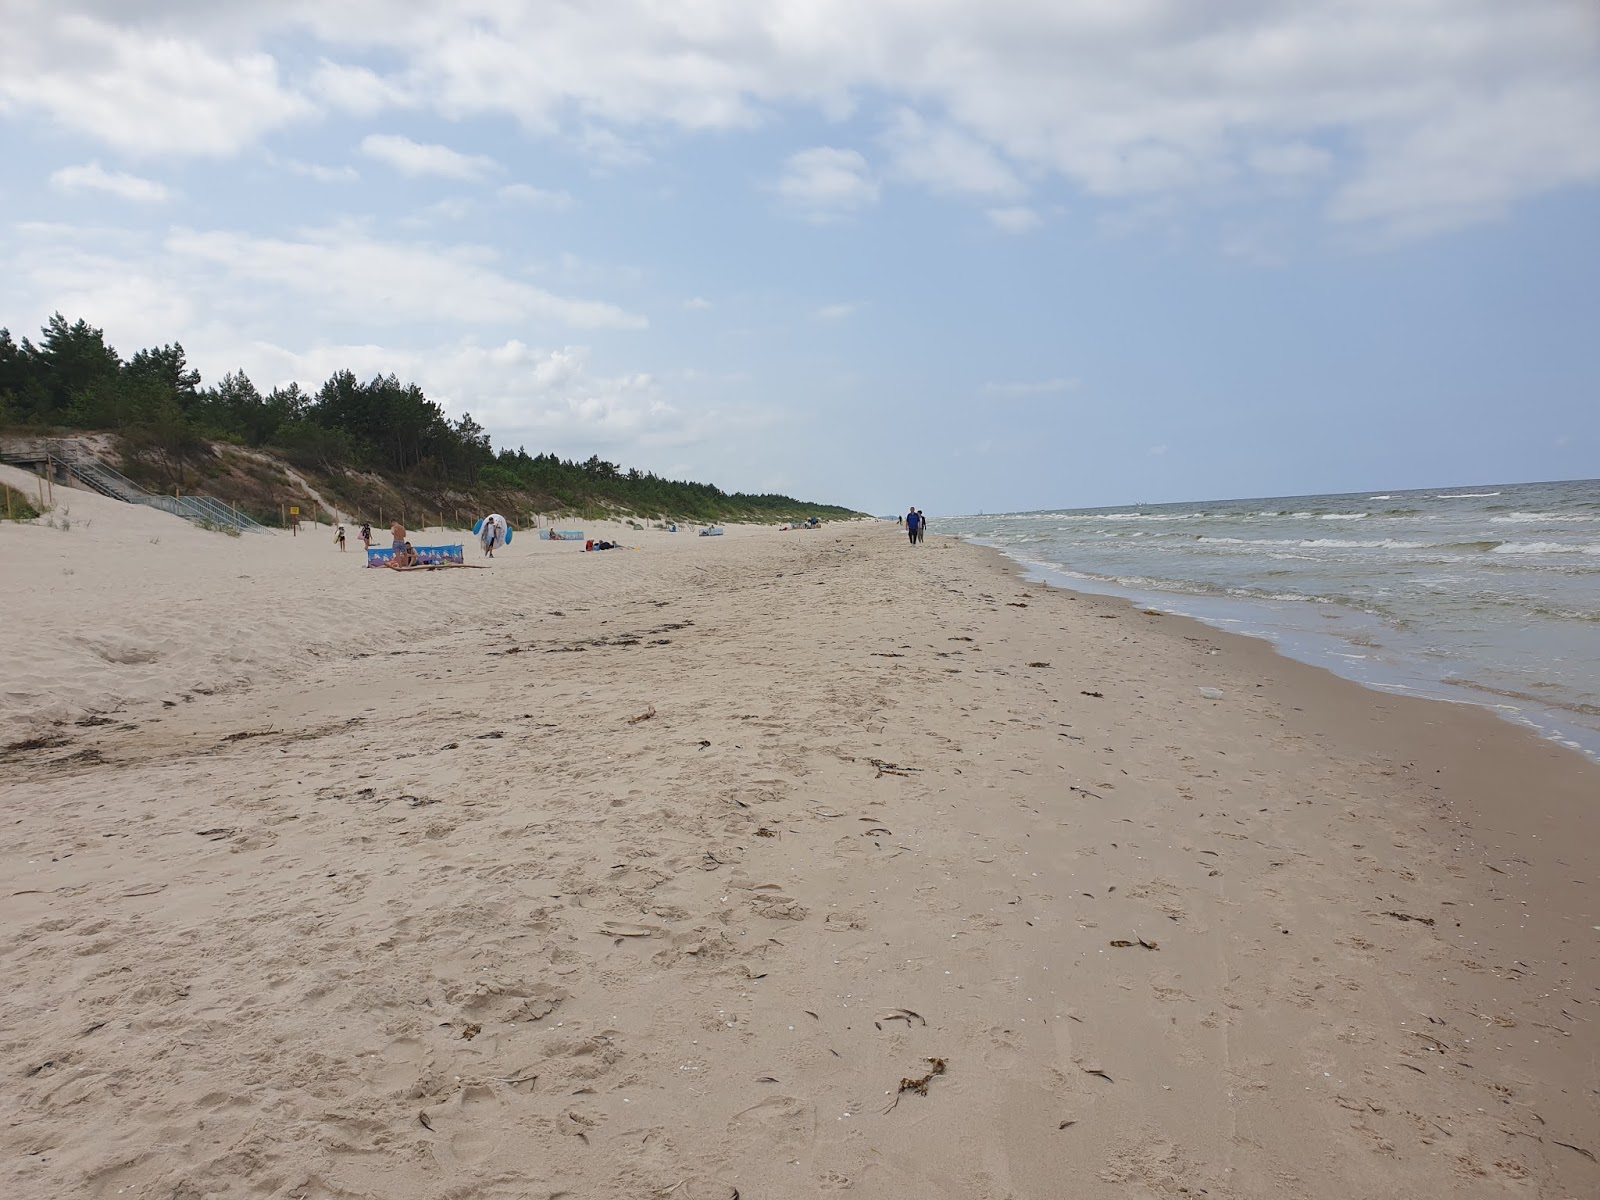 Mrzezynska Beach'in fotoğrafı parlak ince kum yüzey ile